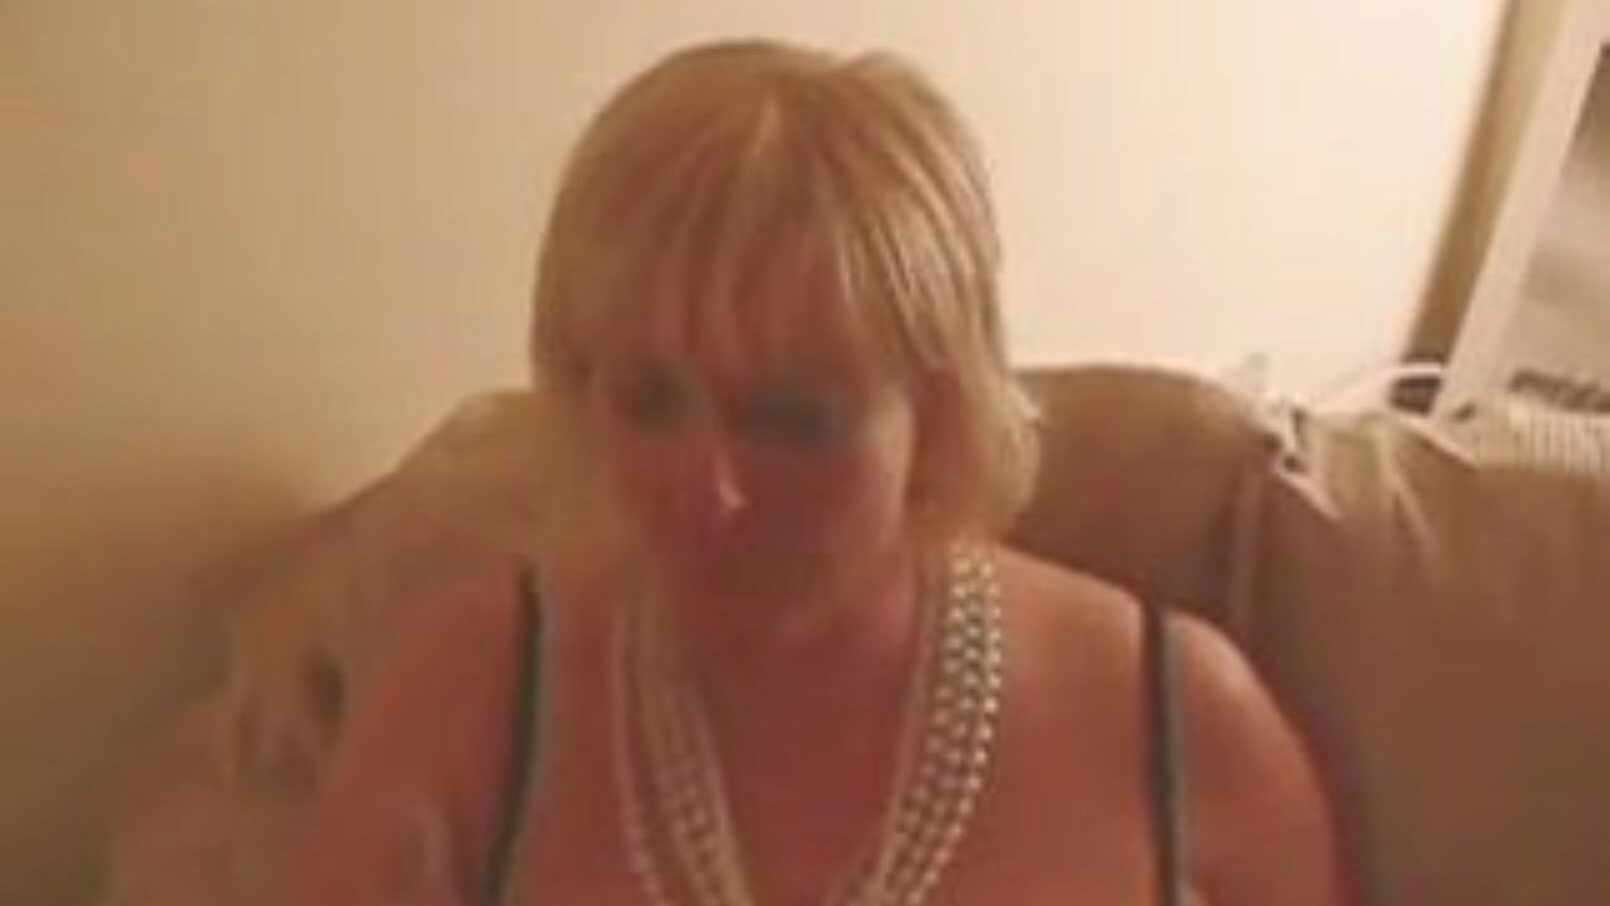 curvele murdare care împărtășesc 12 încărcături de stil spunk gokkun ... urmăriți curve murdare care împărtășesc 12 încărcături de scenă stil film spunk gokkun pe xhamster - baza de date supremă a videoclipurilor cu tuburi porno pornografice gratuite britanice